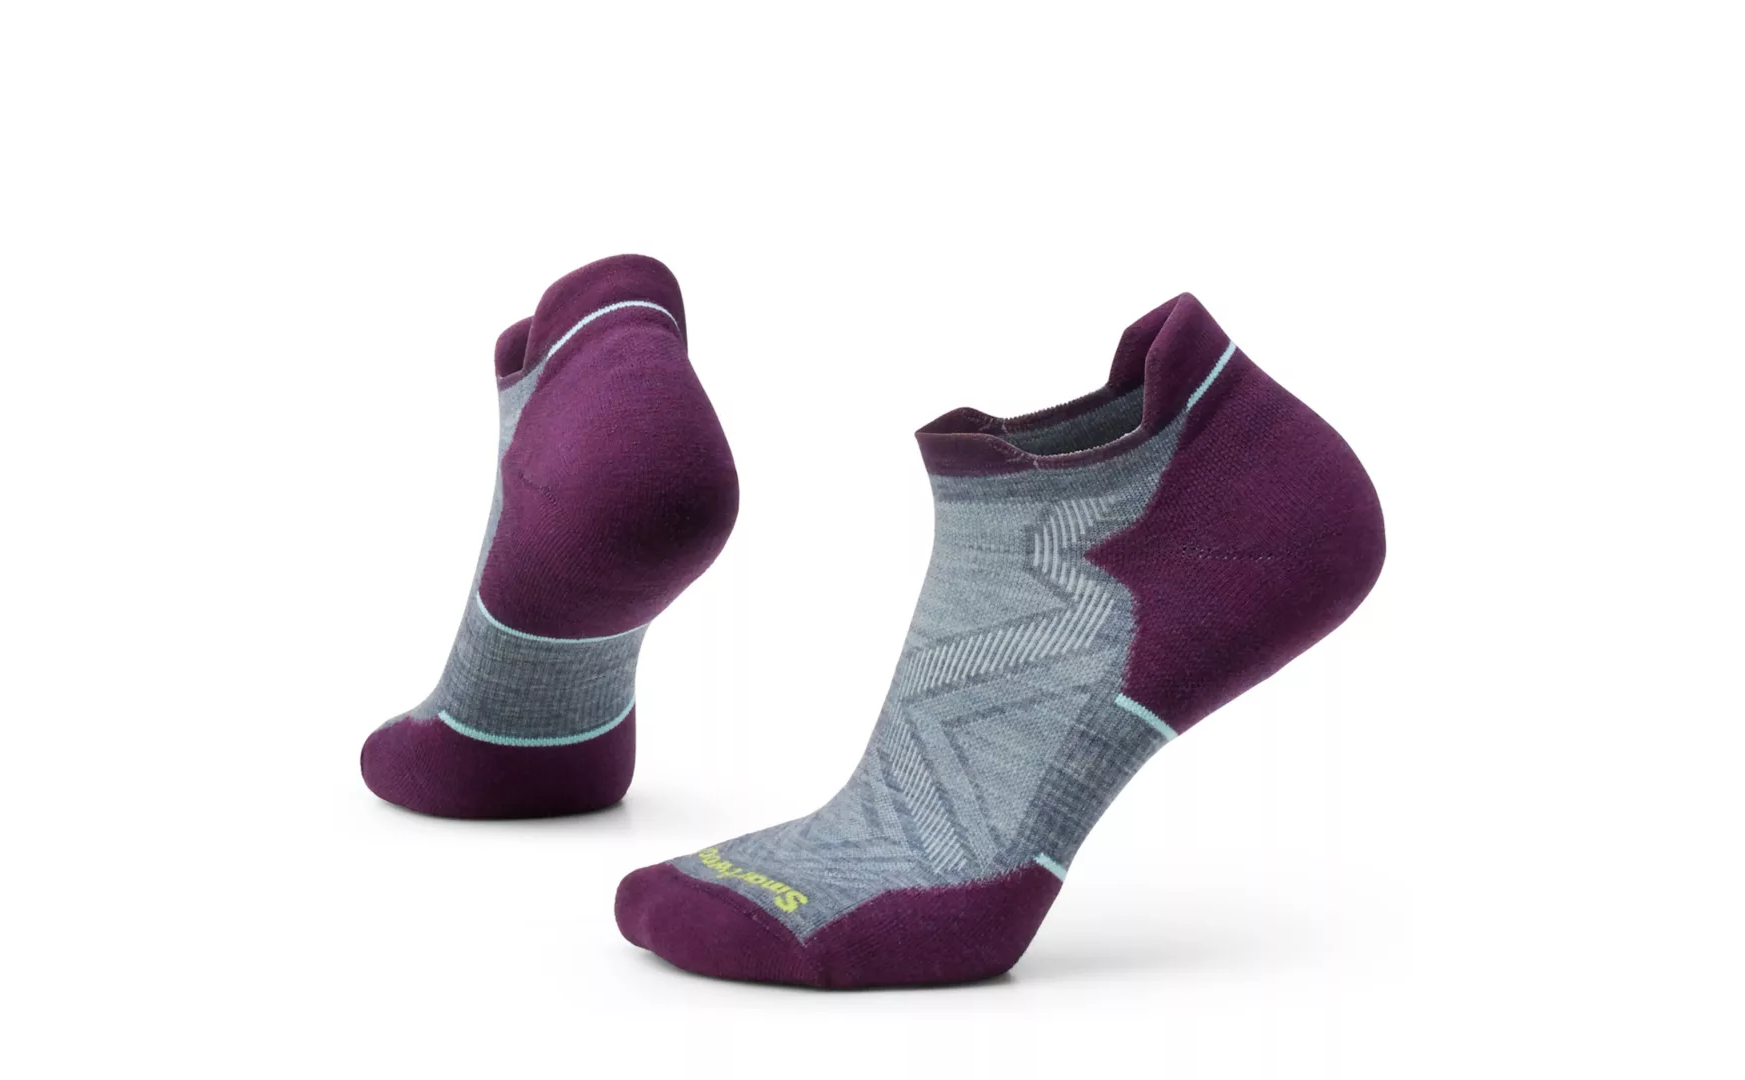 Women's Running Ankle Socks